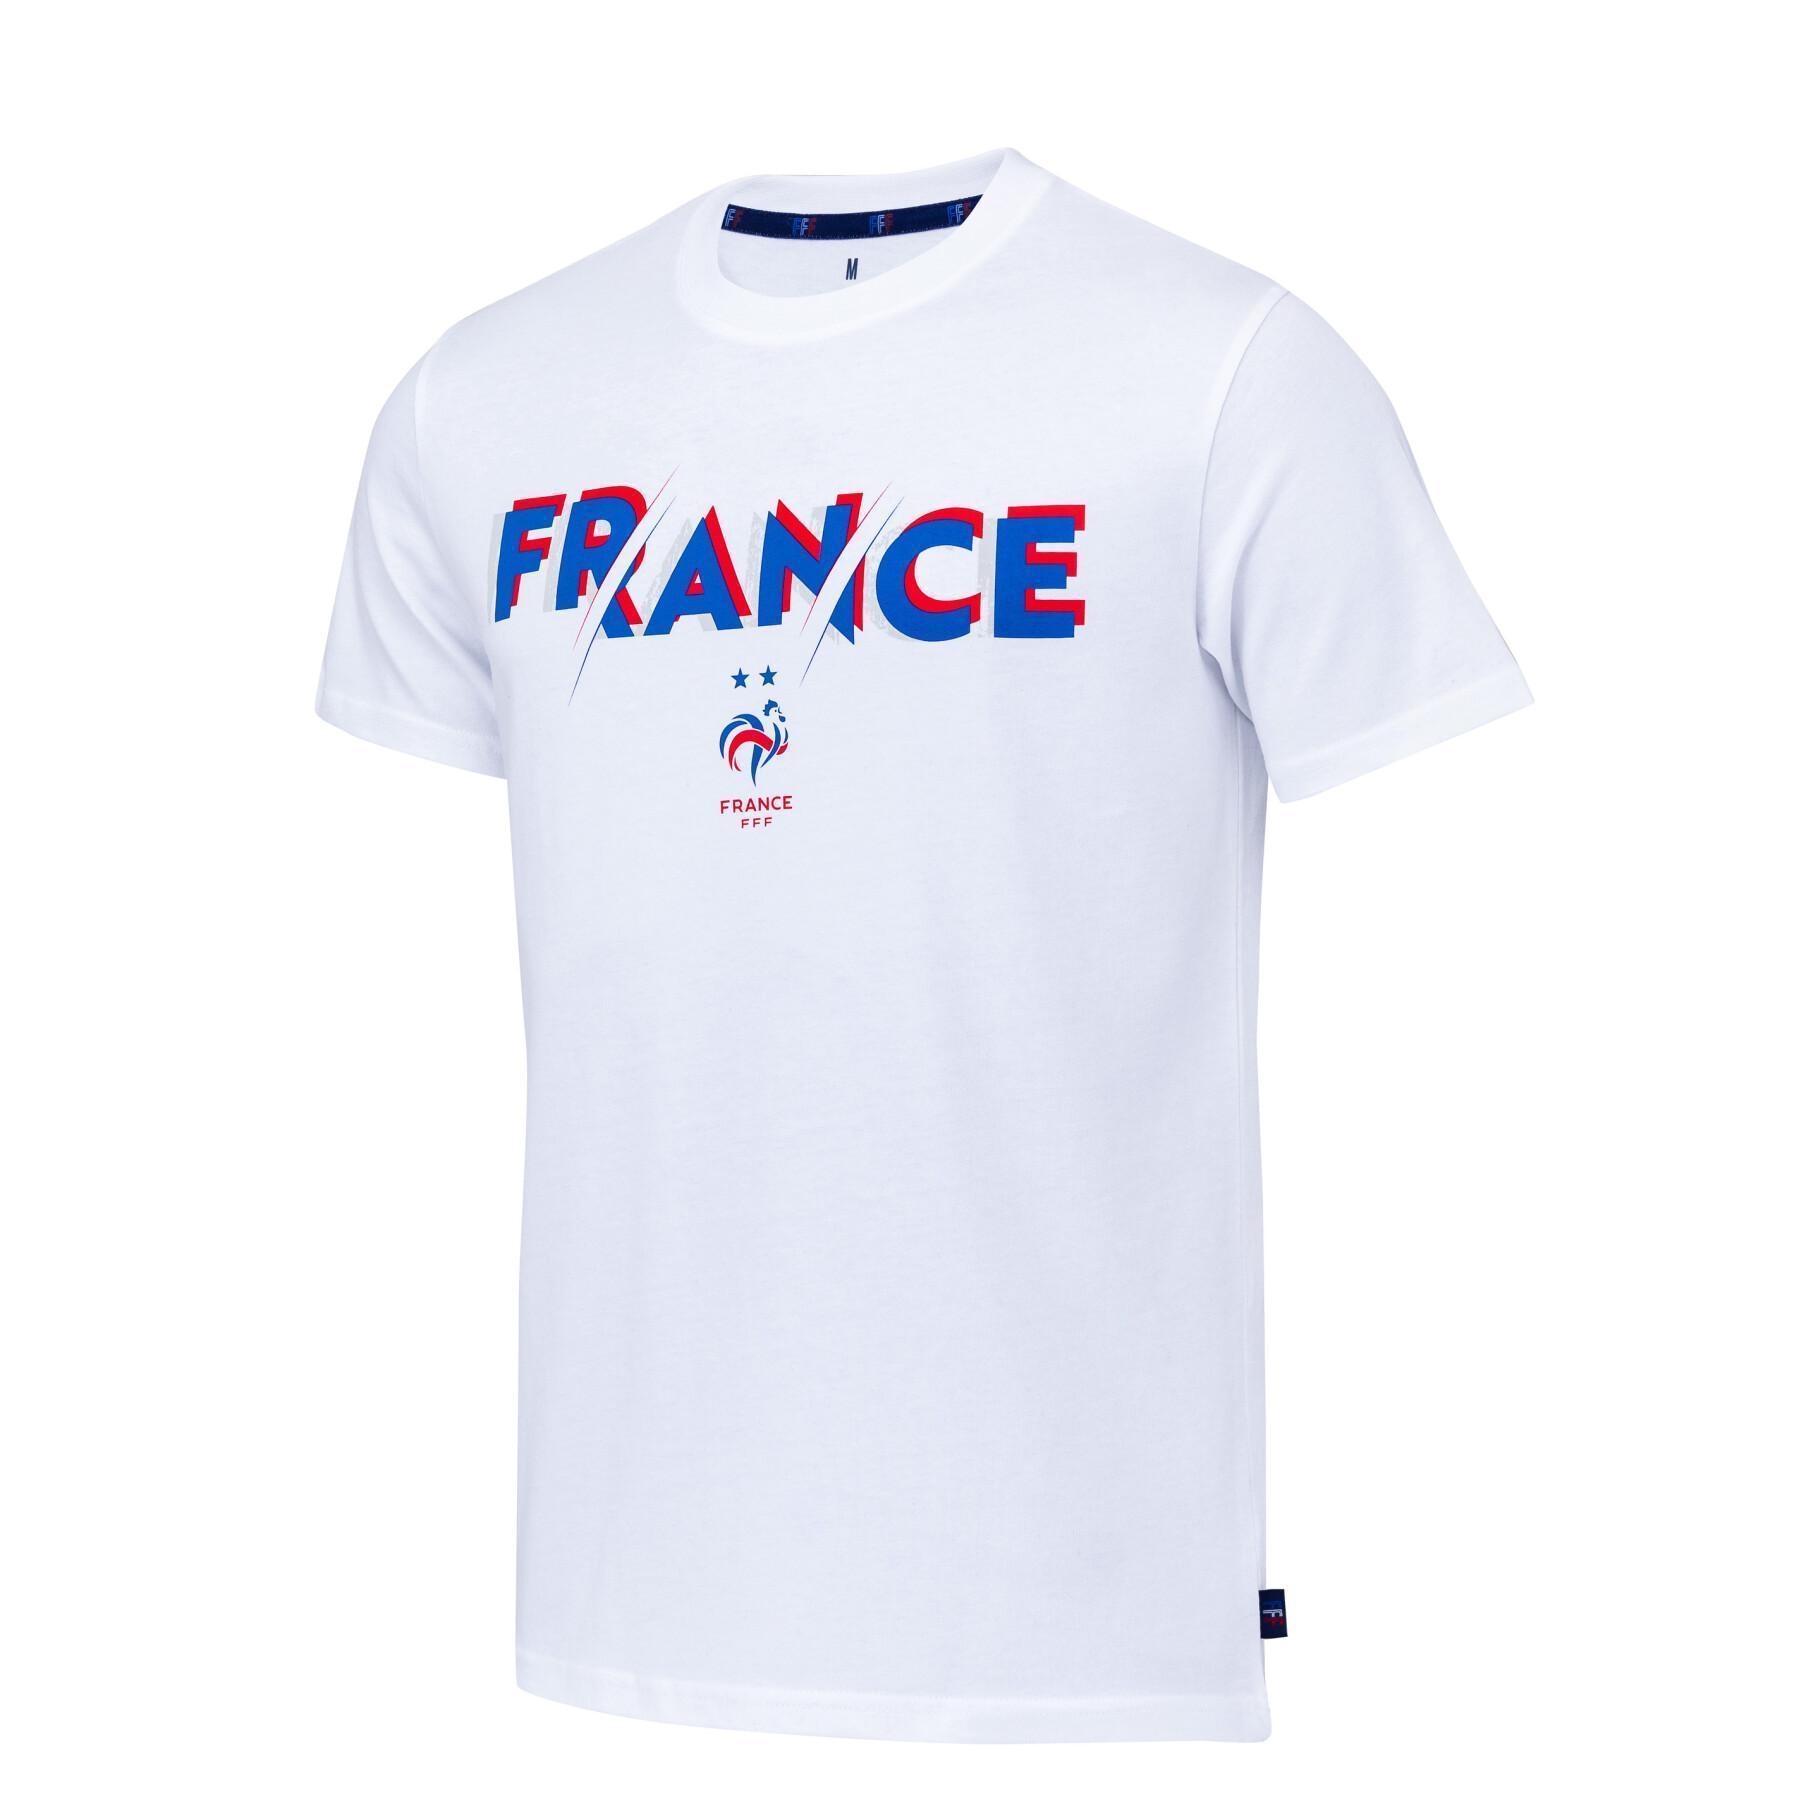 T-shirt da Seleção Nacional Francesa 2022/23